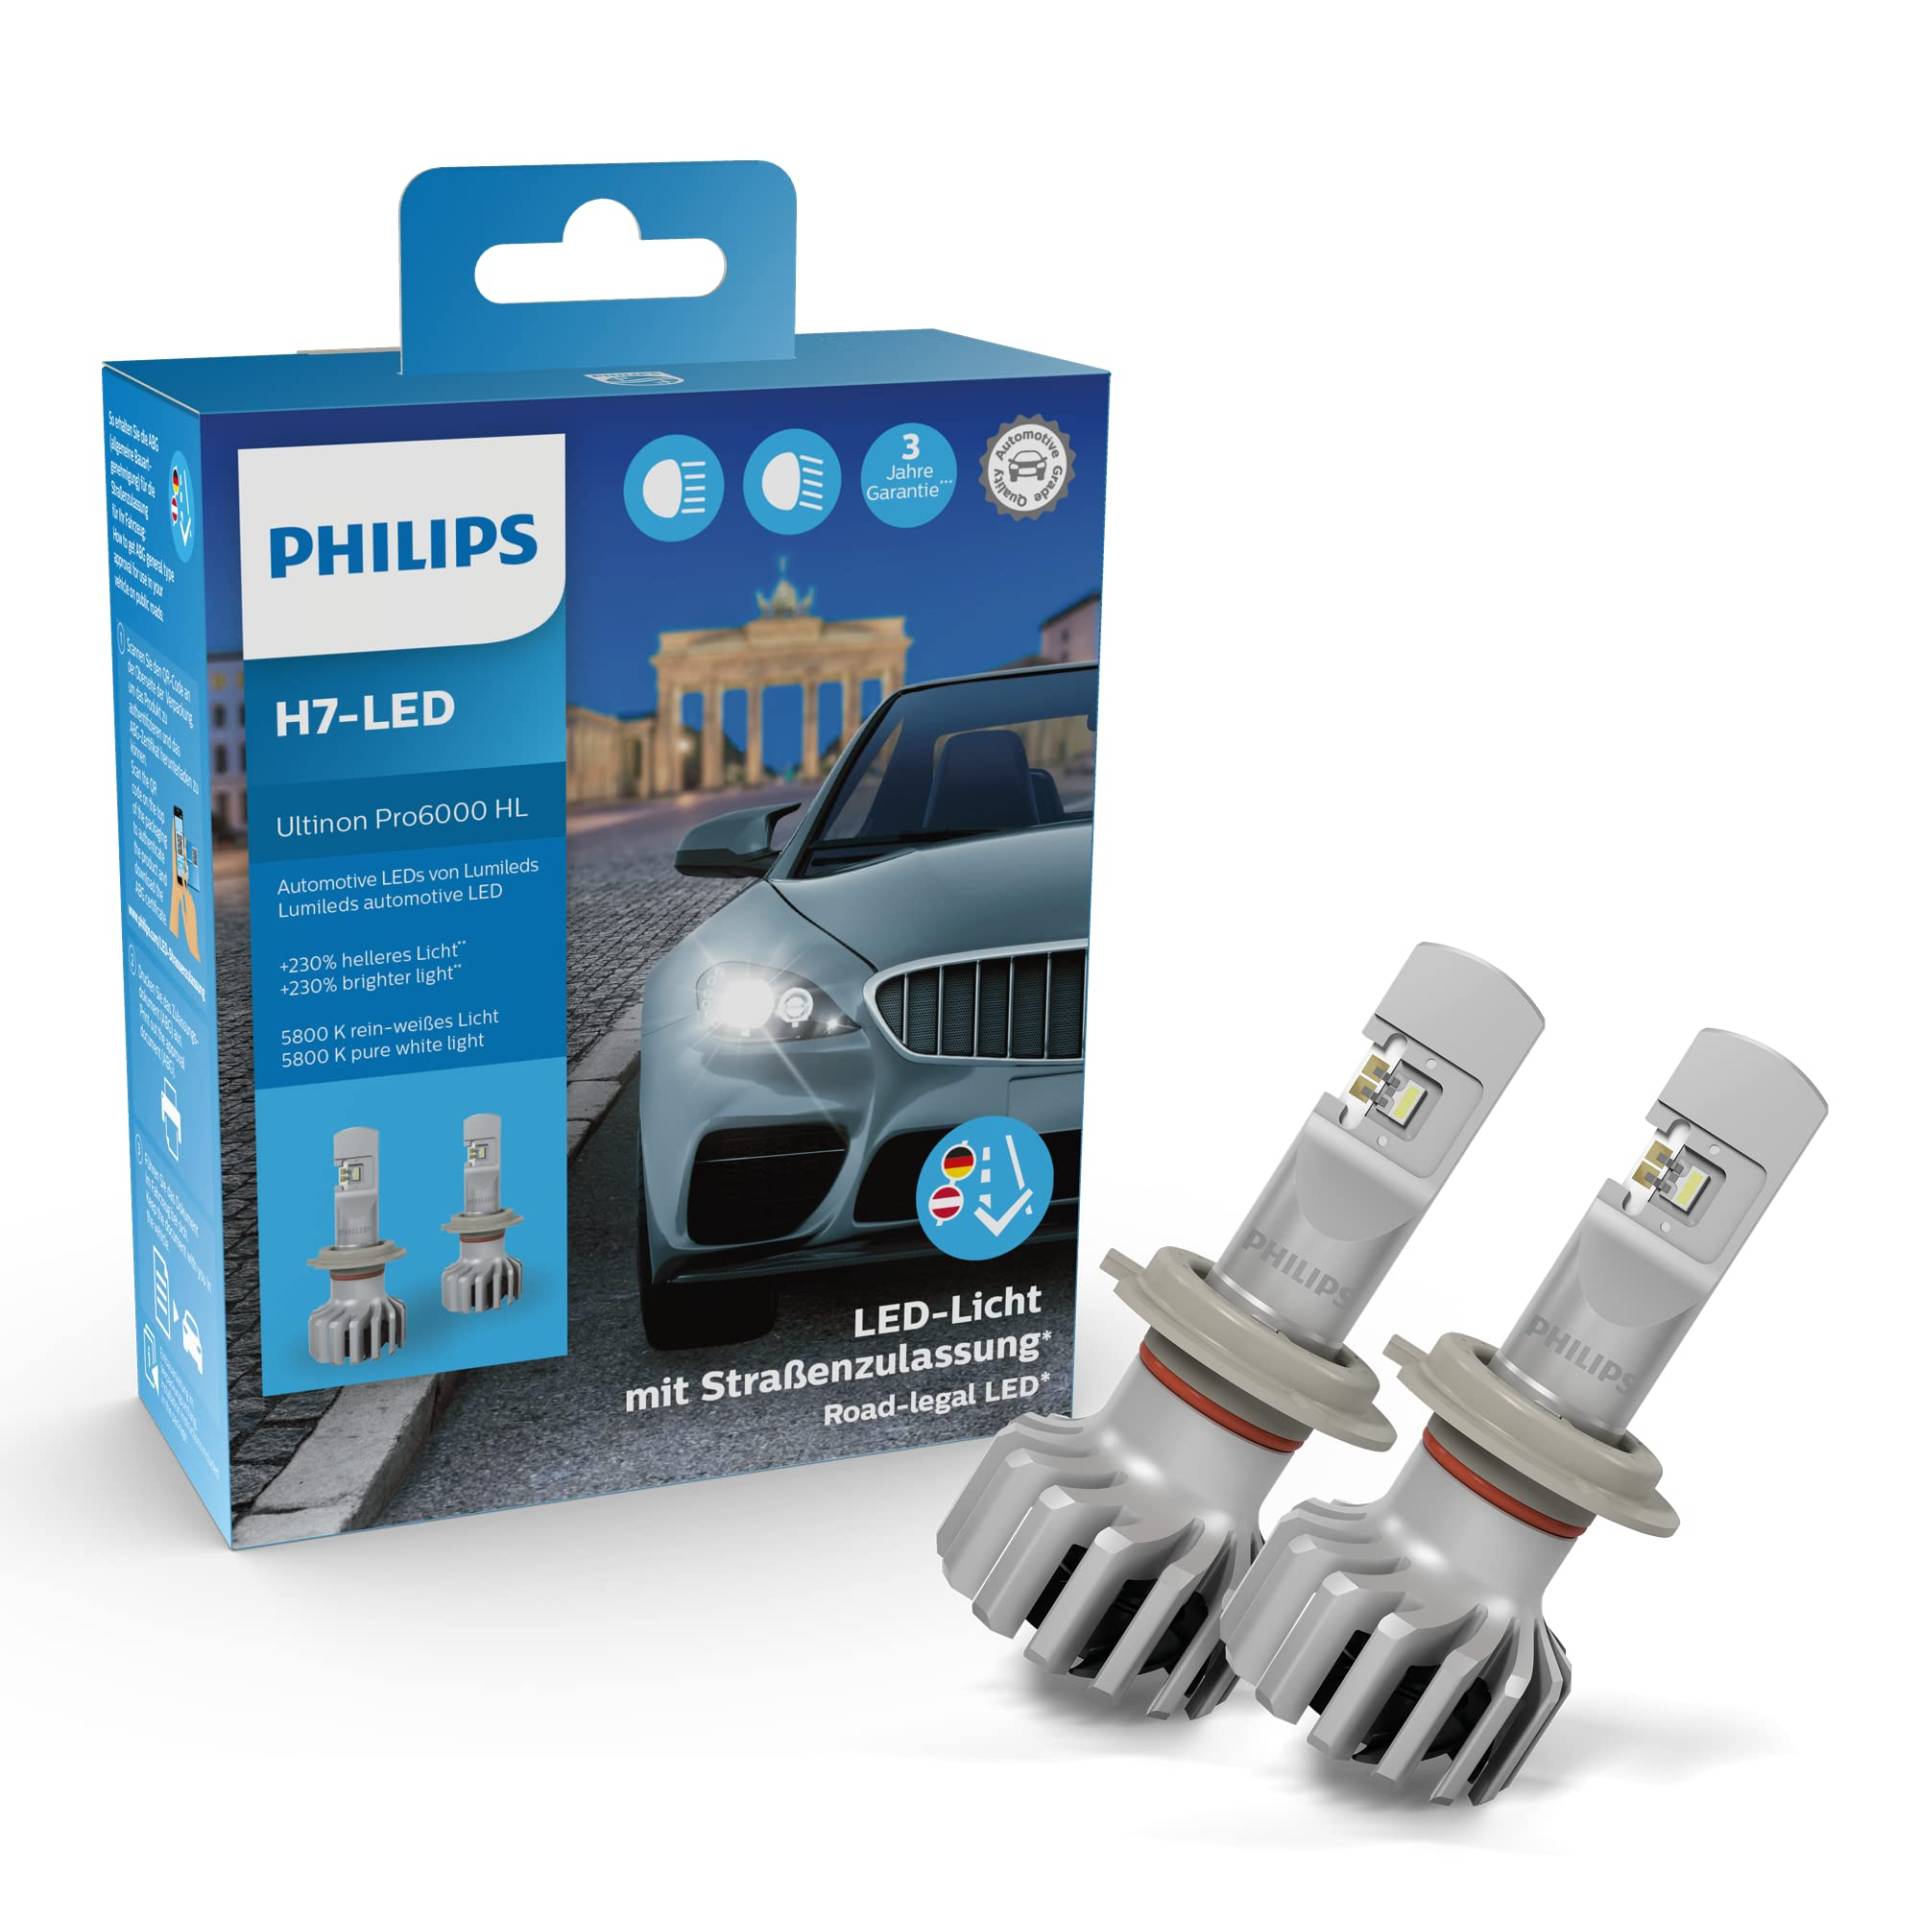 Philips Ultinon Pro6000 H7-LED Scheinwerferlampe mit Straßenzulassung, 230% helleres Licht von Philips automotive lighting